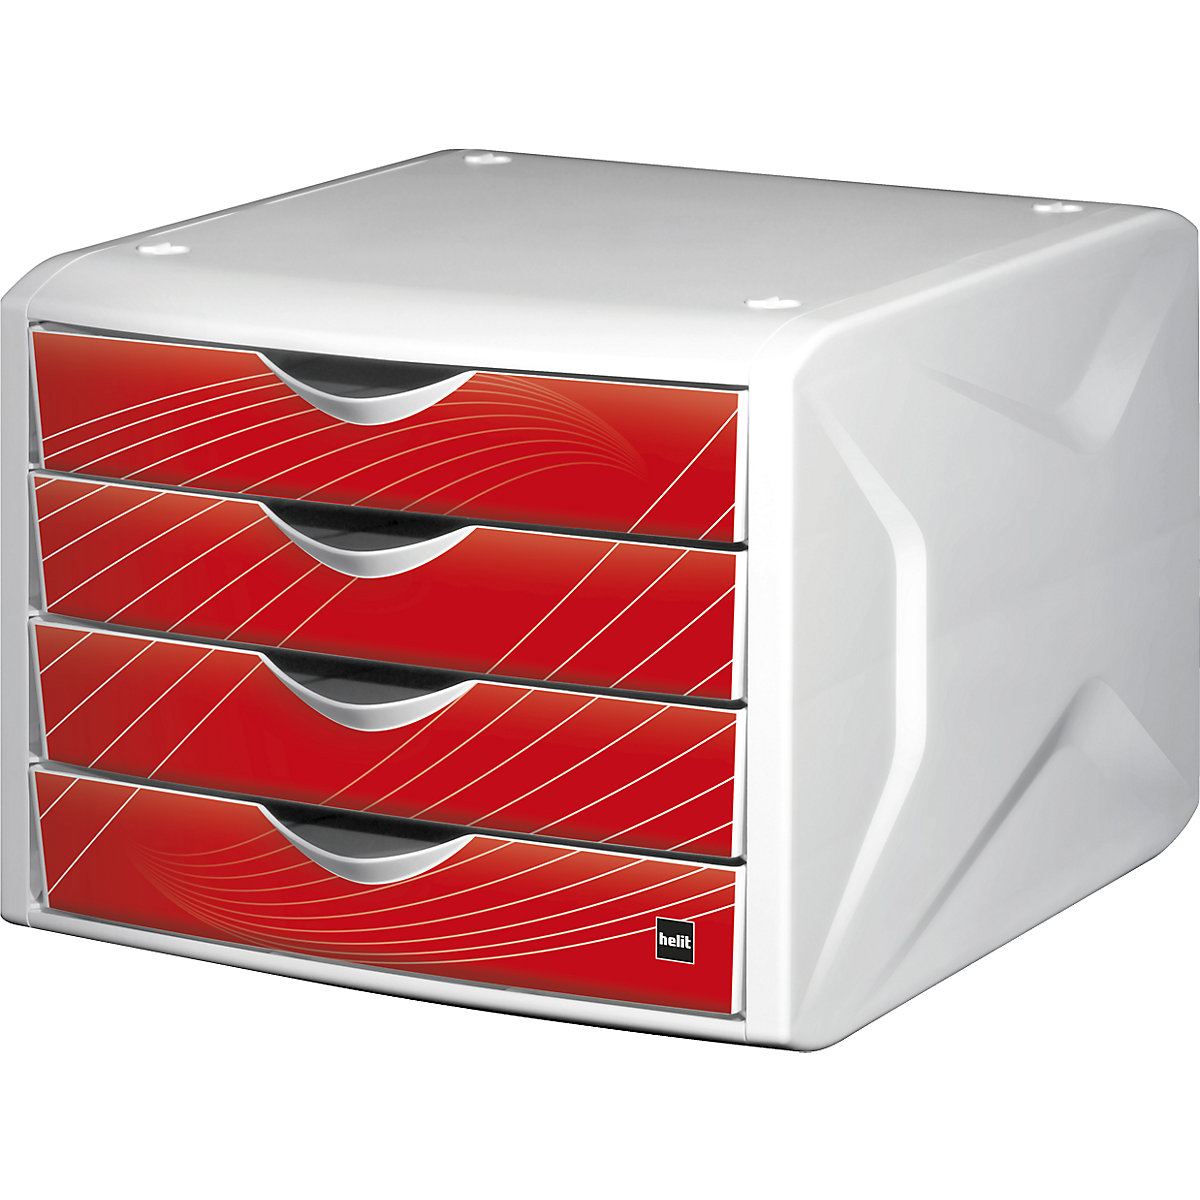 Bloc-tiroirs – helit, h x l x p 212 x 262 x 330 mm, lot de 5, design tiroirs red rook-8